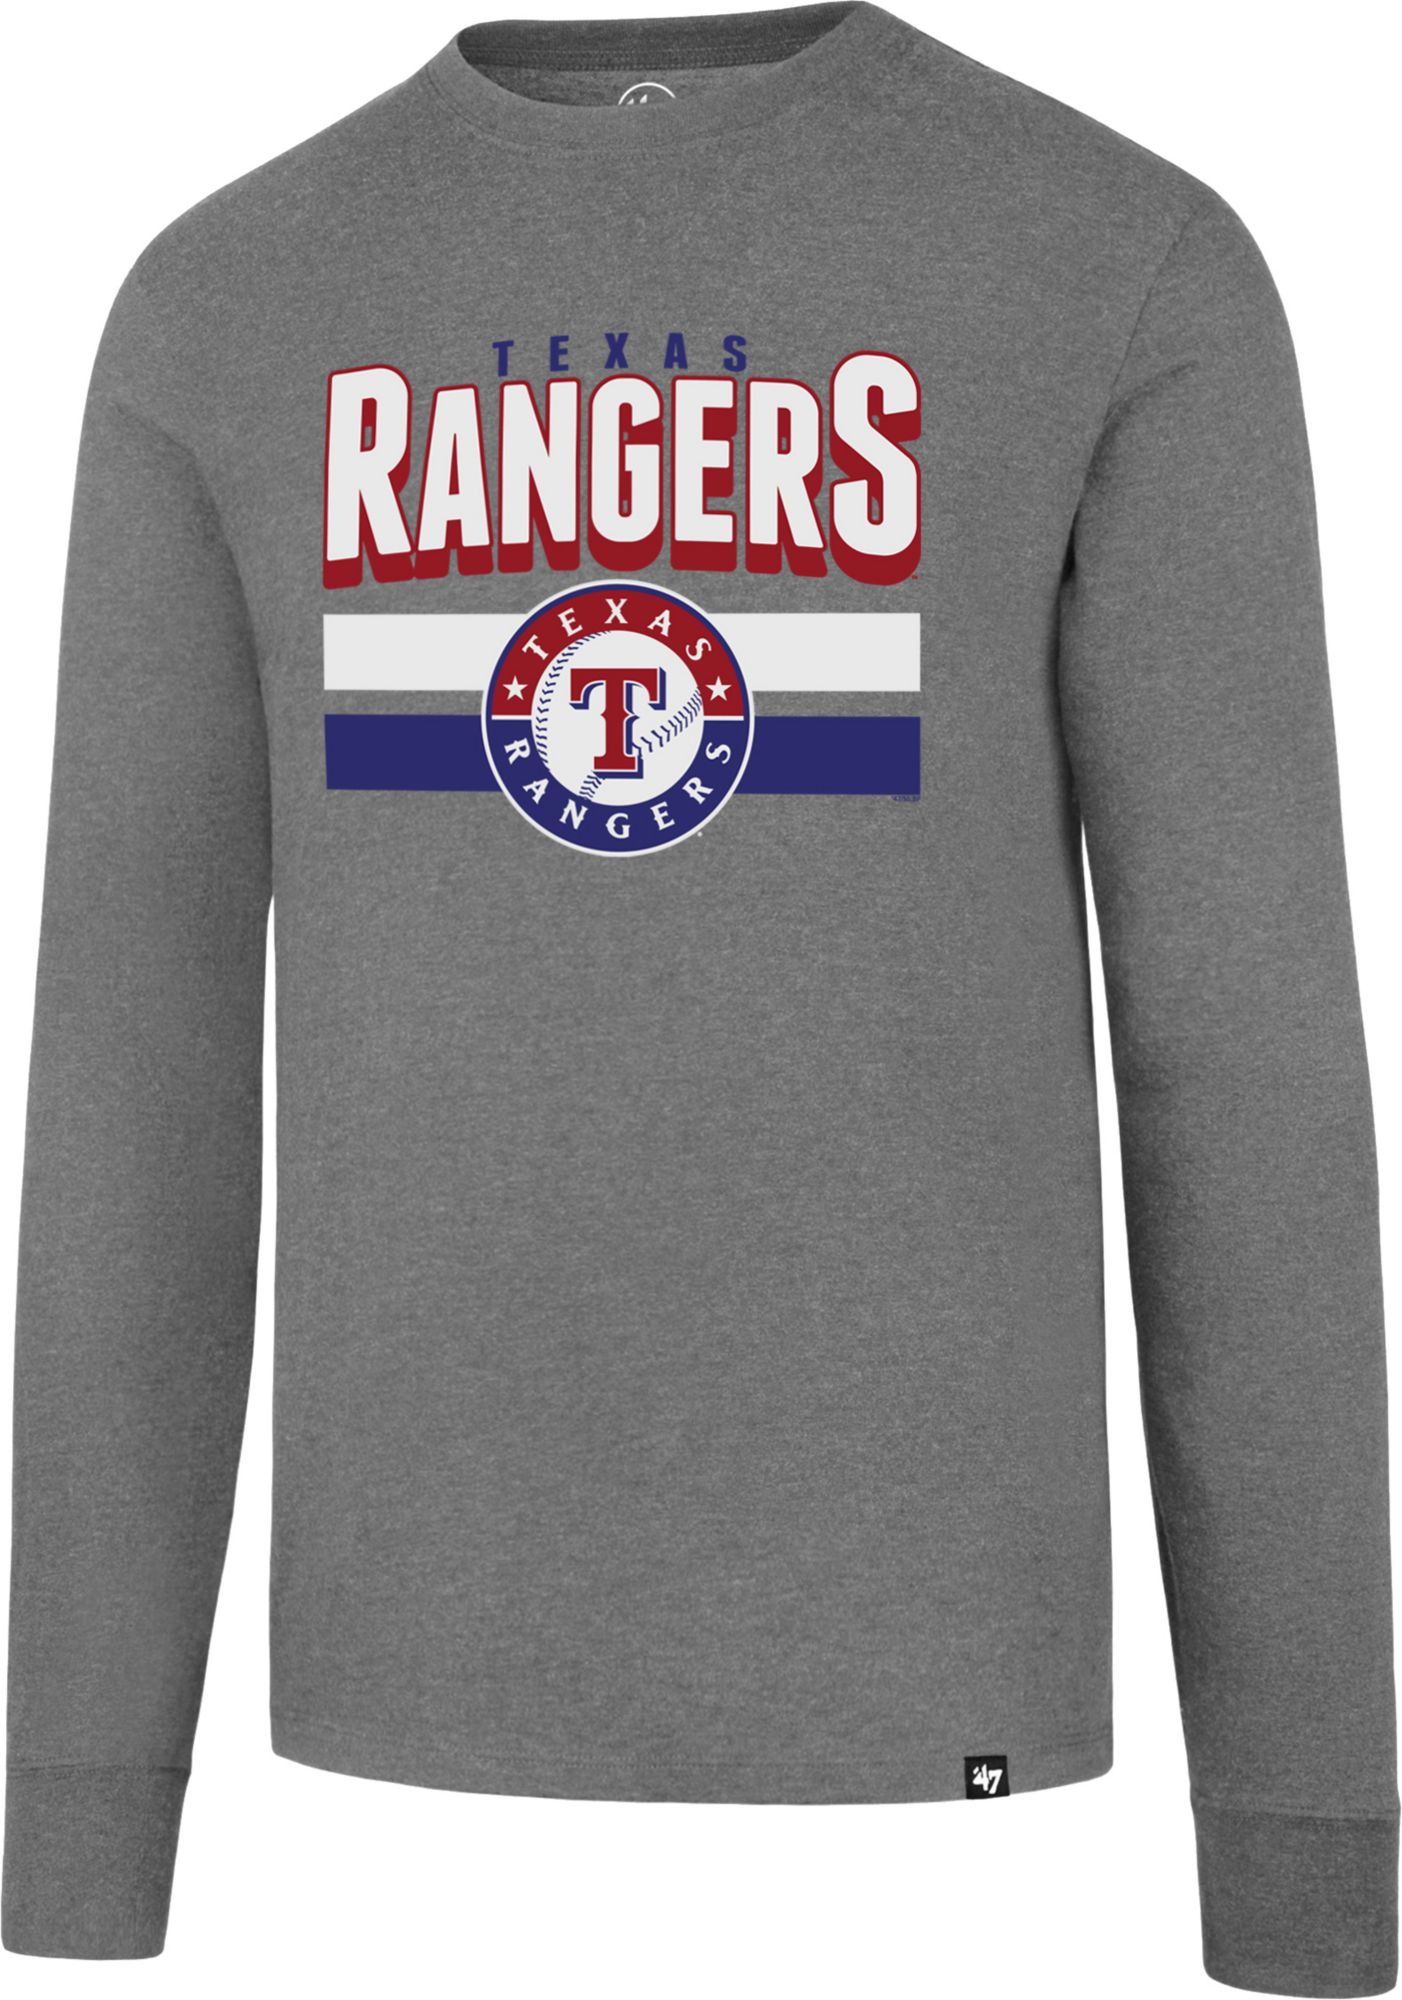 men's texas rangers shirt